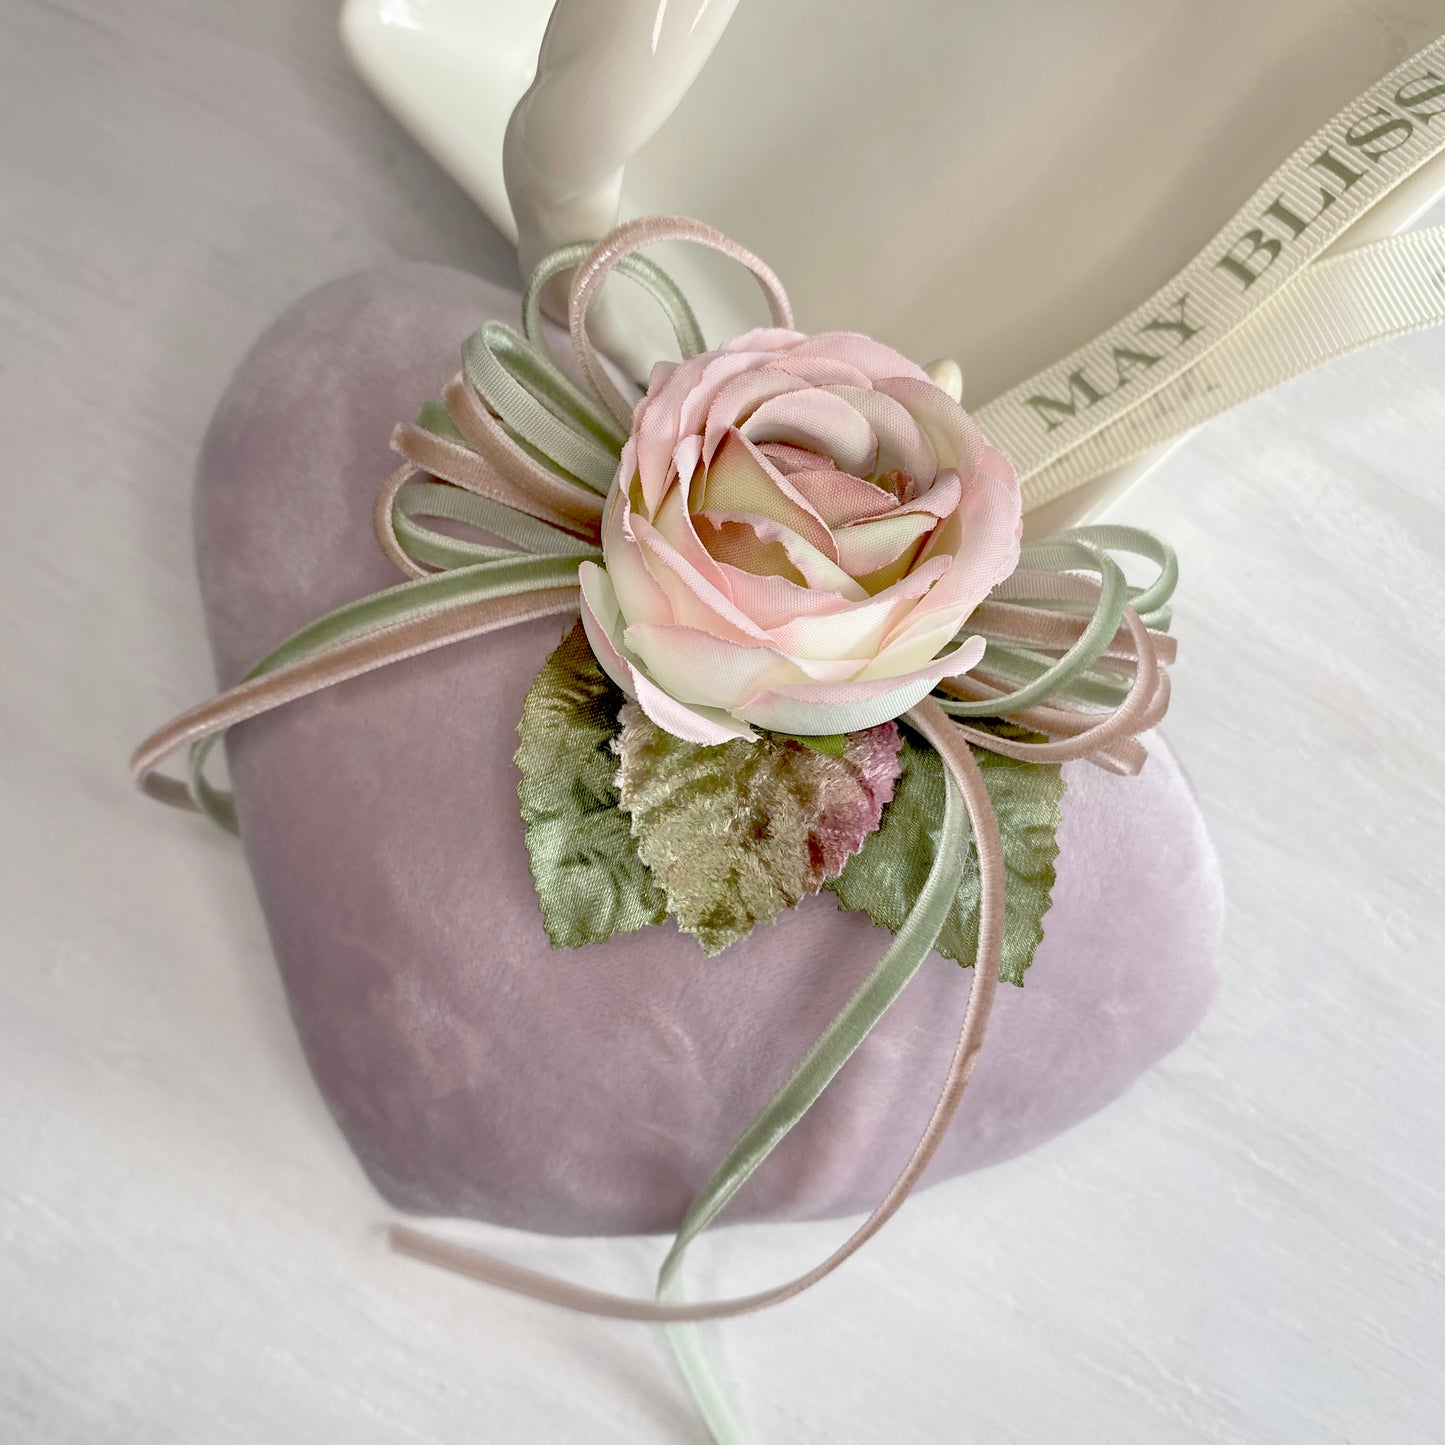 Velvet Heart Sachet with Gorgeous Rose, and Velvet Ribbons, Gift for Her